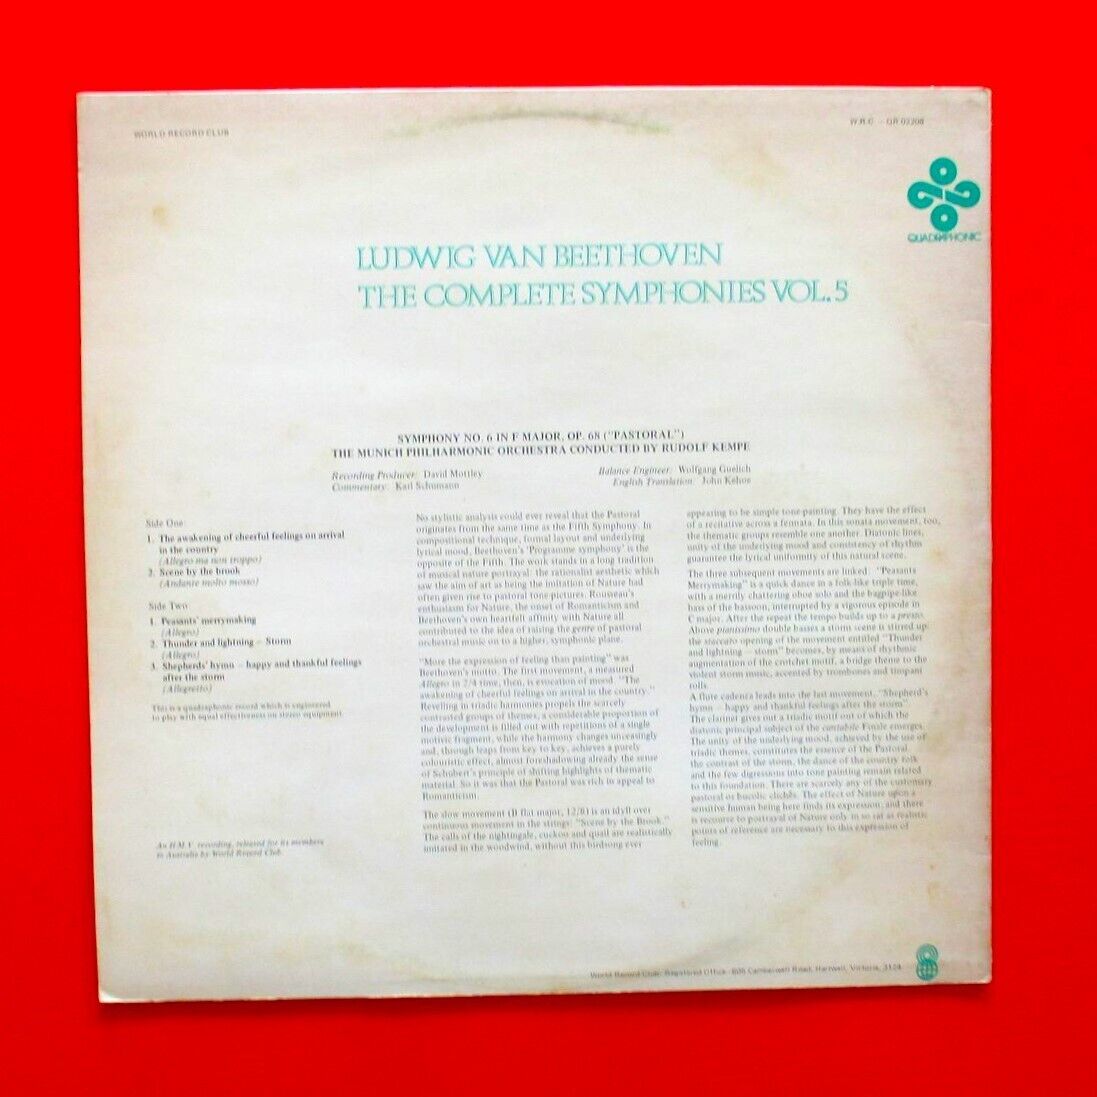 Beethoven ‎The Complete Symphonies Vol. 5 Vinyl LP 1975 Quadraphonic